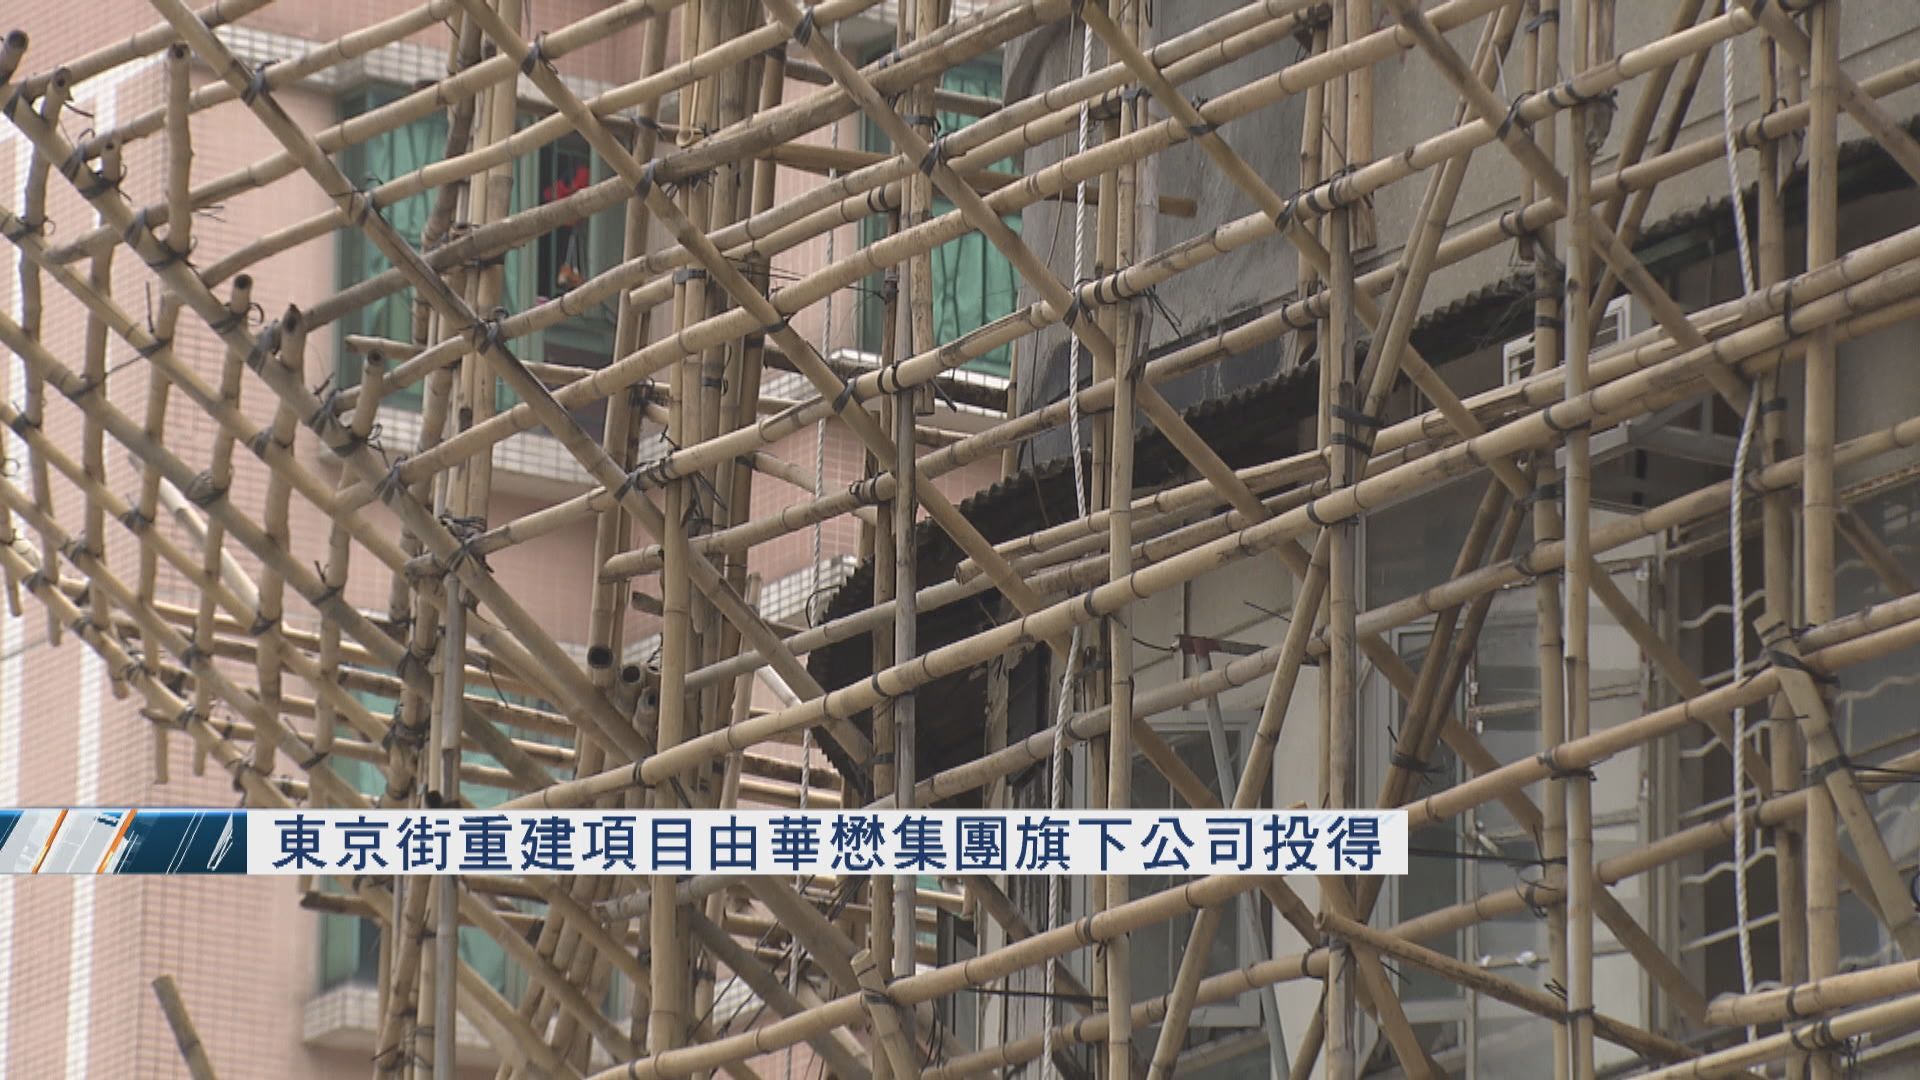 東京街重建項目由華懋集團旗下公司投得